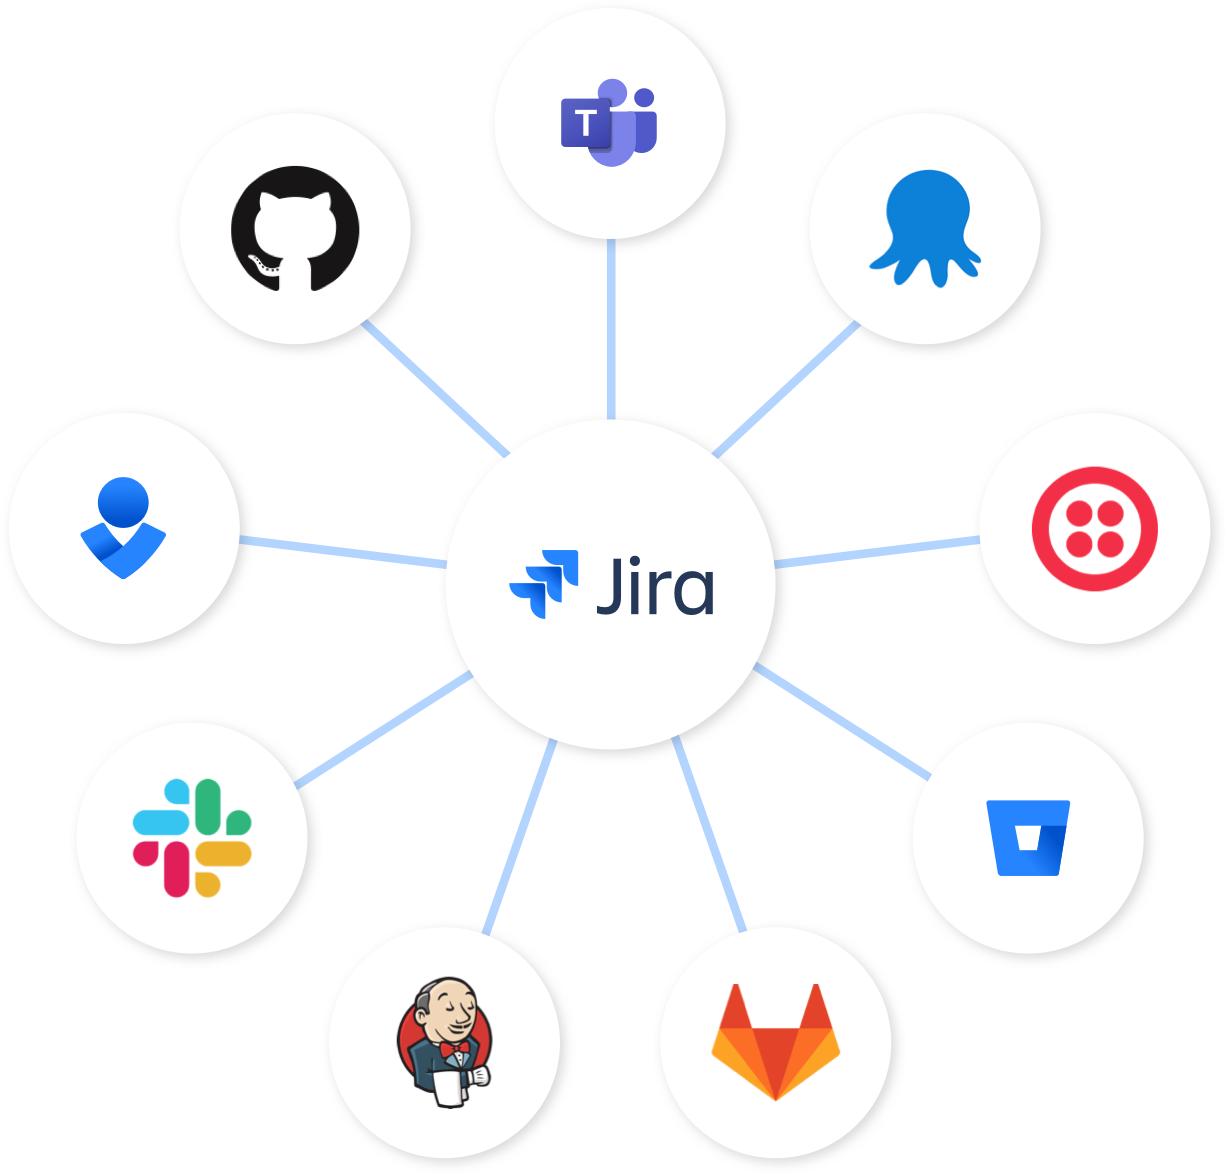 Węzeł Jira — Jira w centrum, z połączonymi rozwiązaniami Bitbucket, Slack i Opsgenie